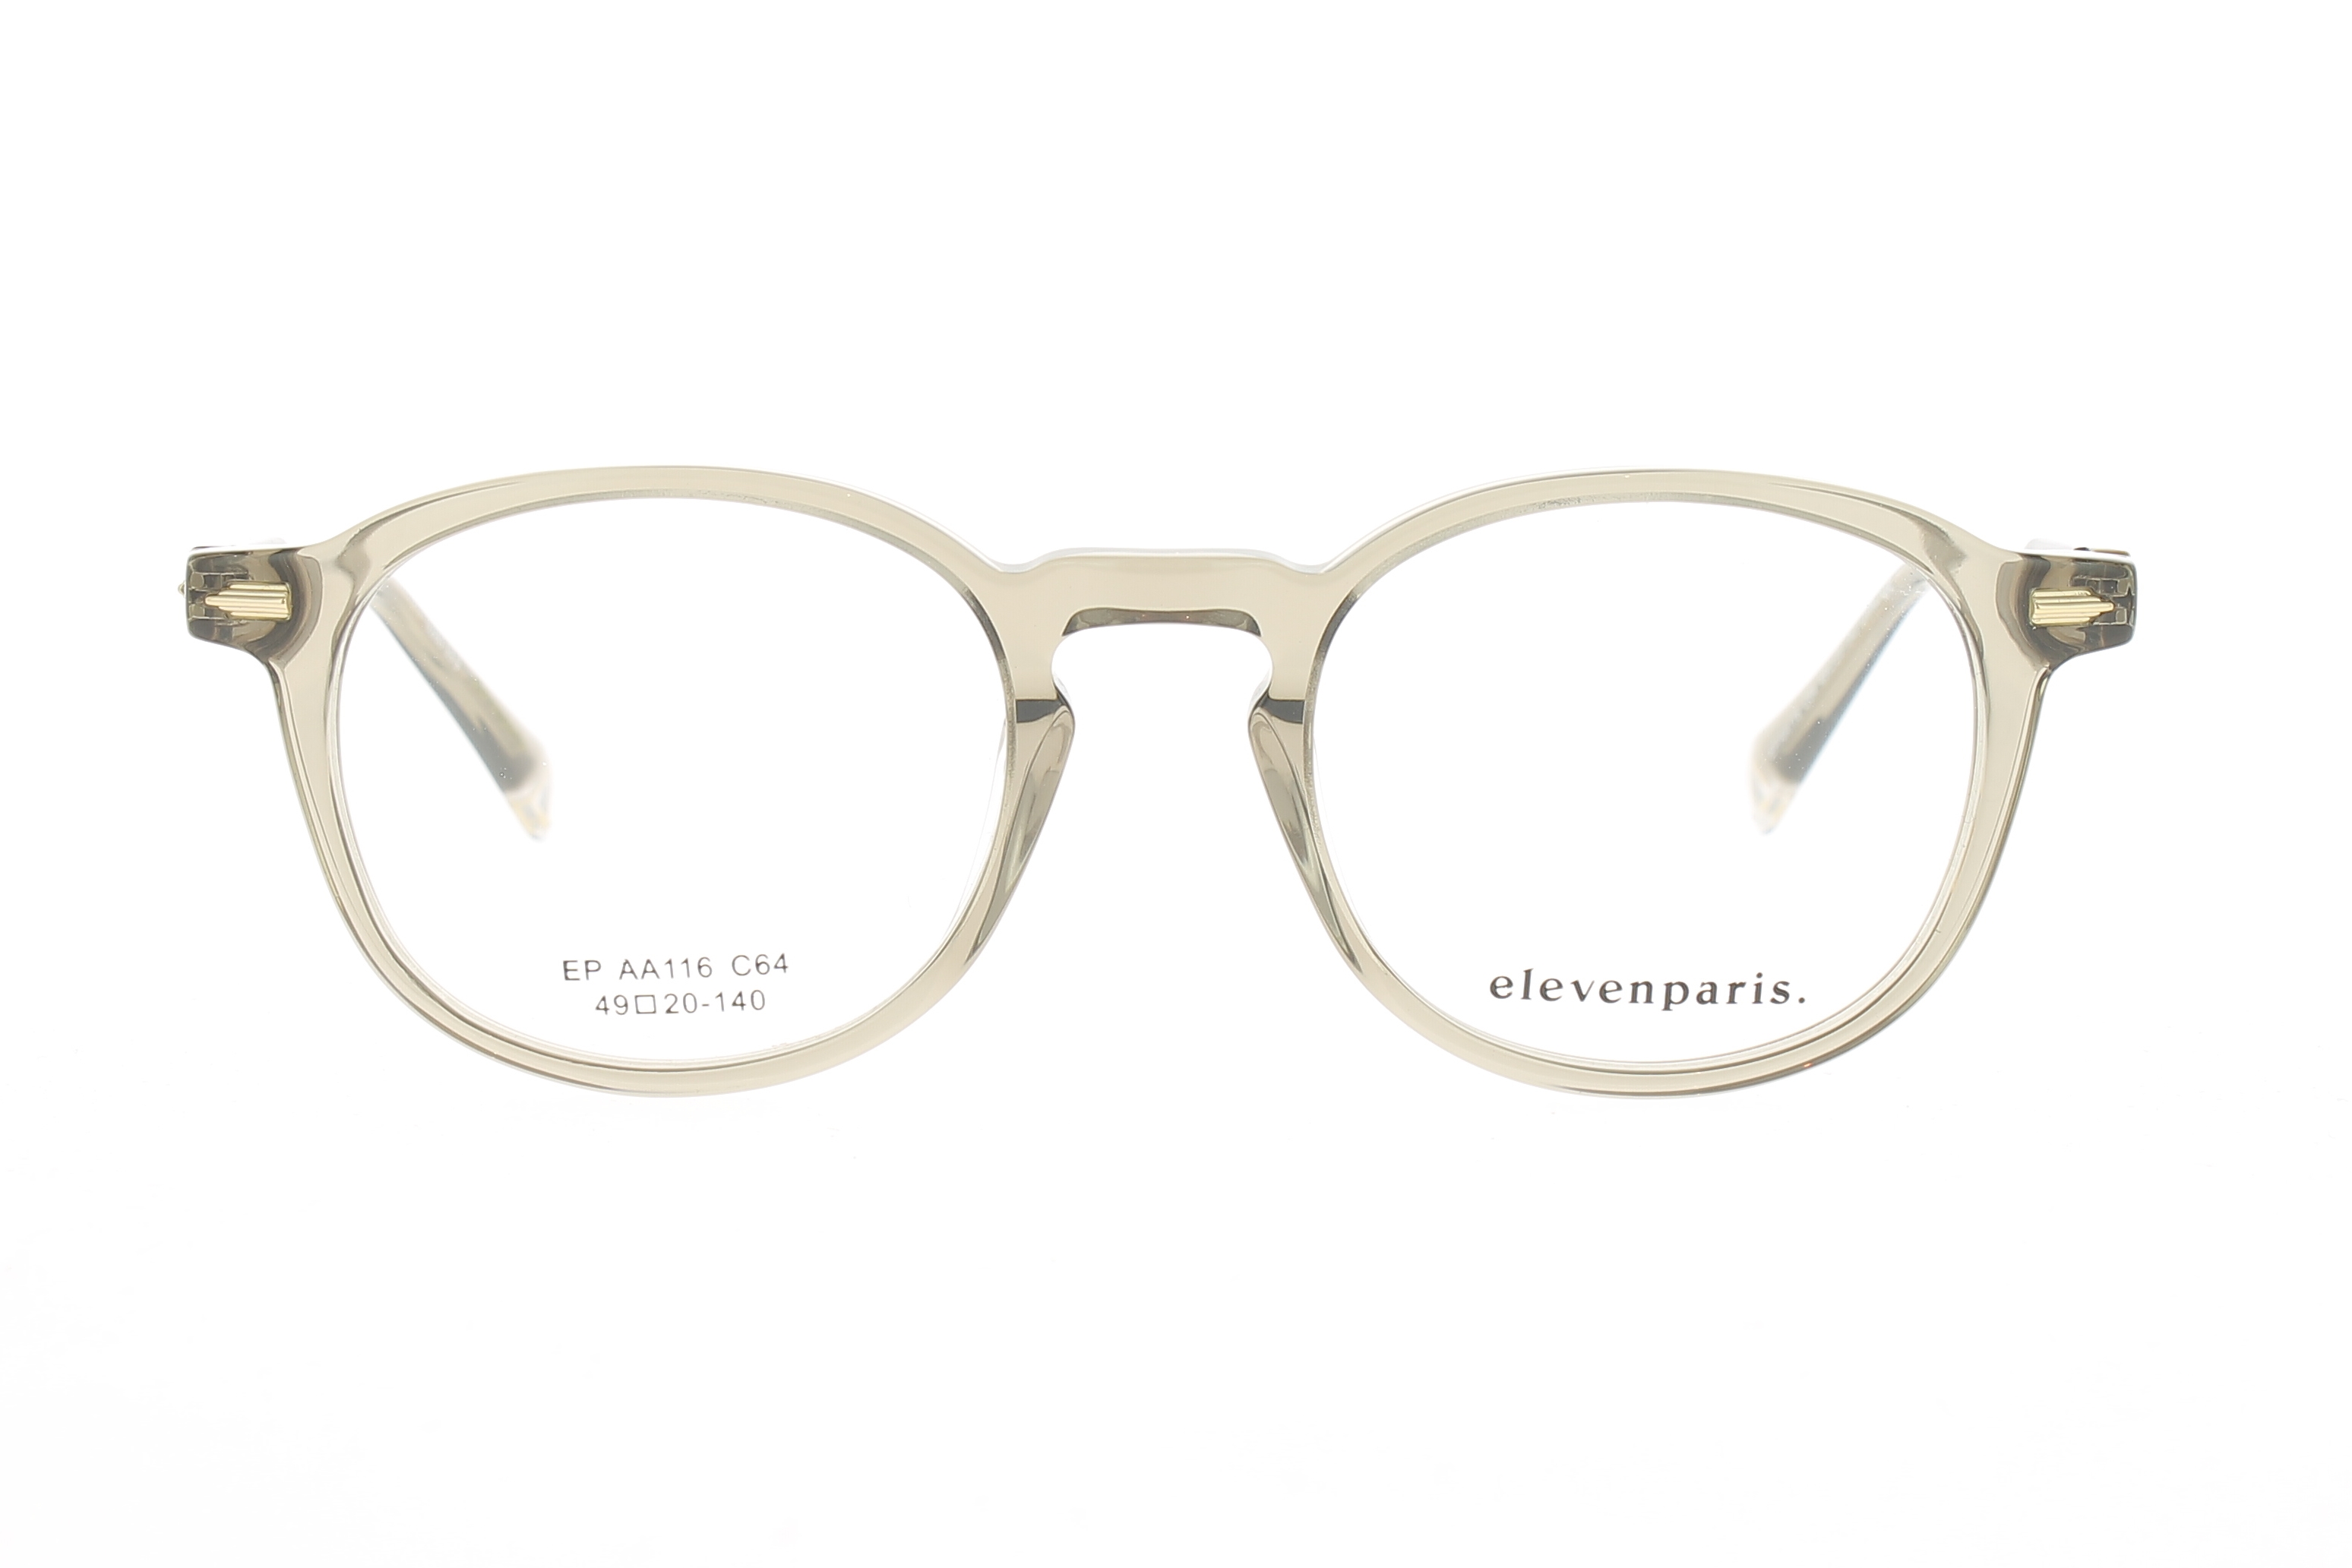 Paire de lunettes de vue Eleven-paris Epaa116 couleur gris - Doyle